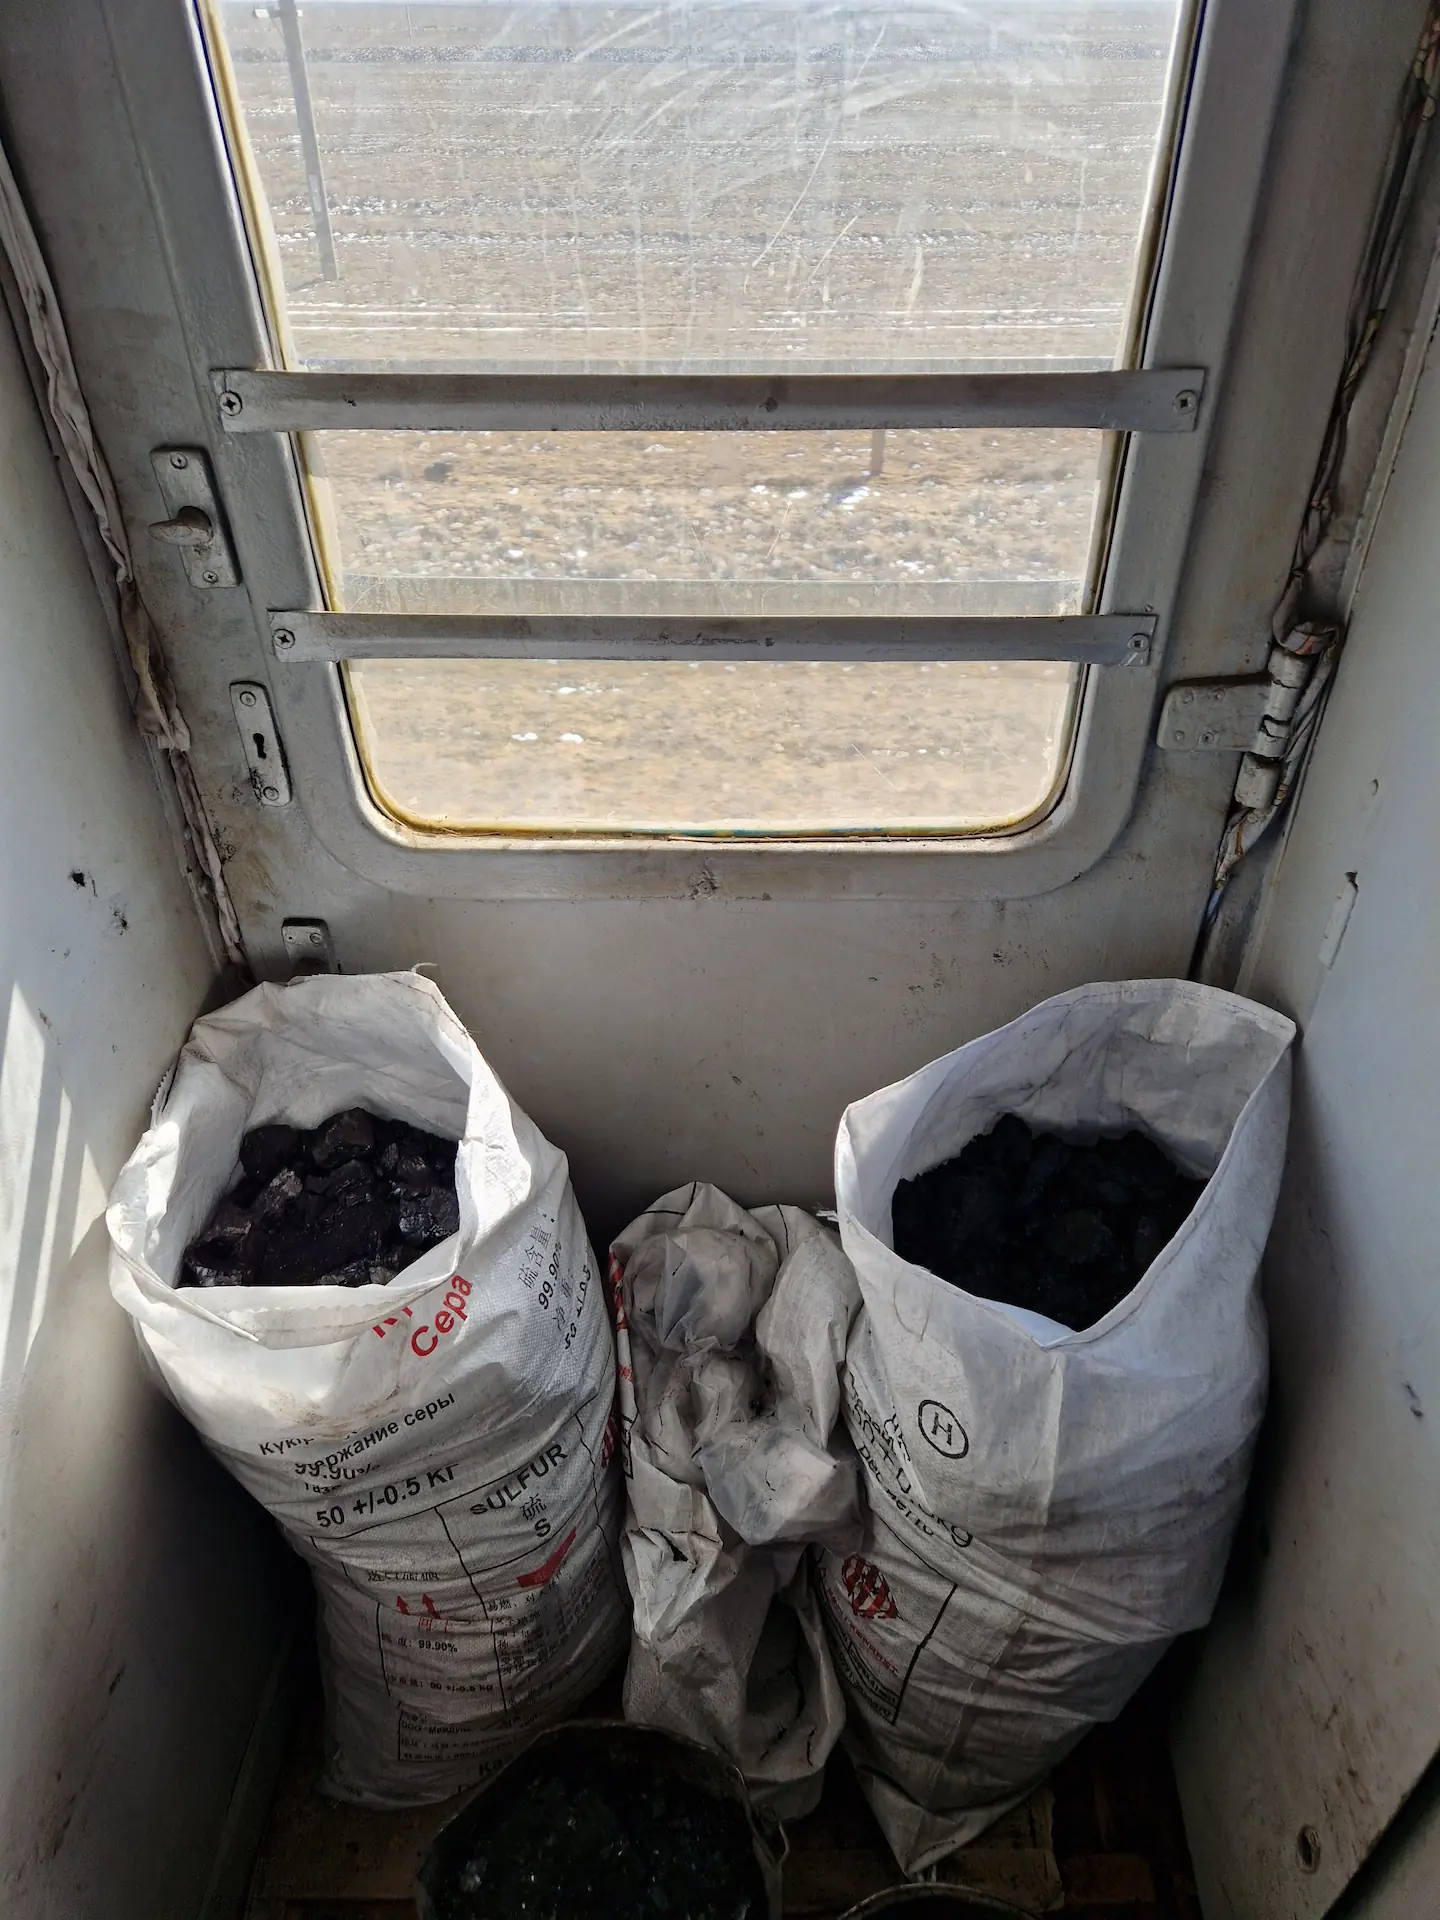 Dans le couloir, deux grands sacs de charbon servant uniquement à chauffer l'eau du samovar.